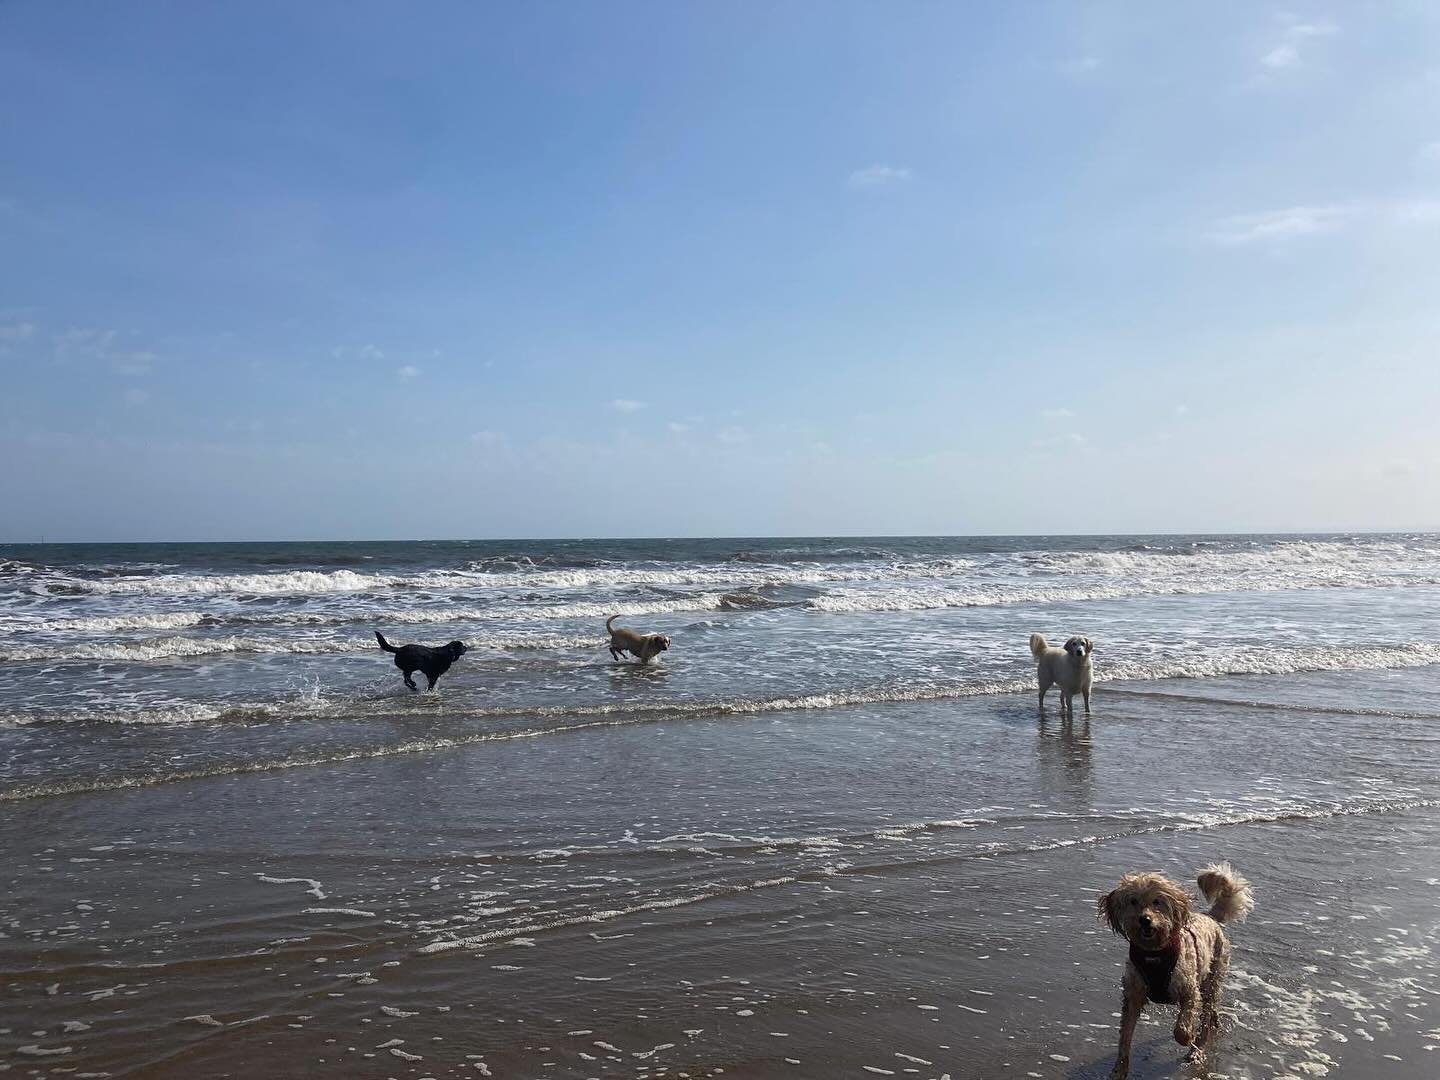 Beach day!! 😎☀️ #sunsout #sociablehounds